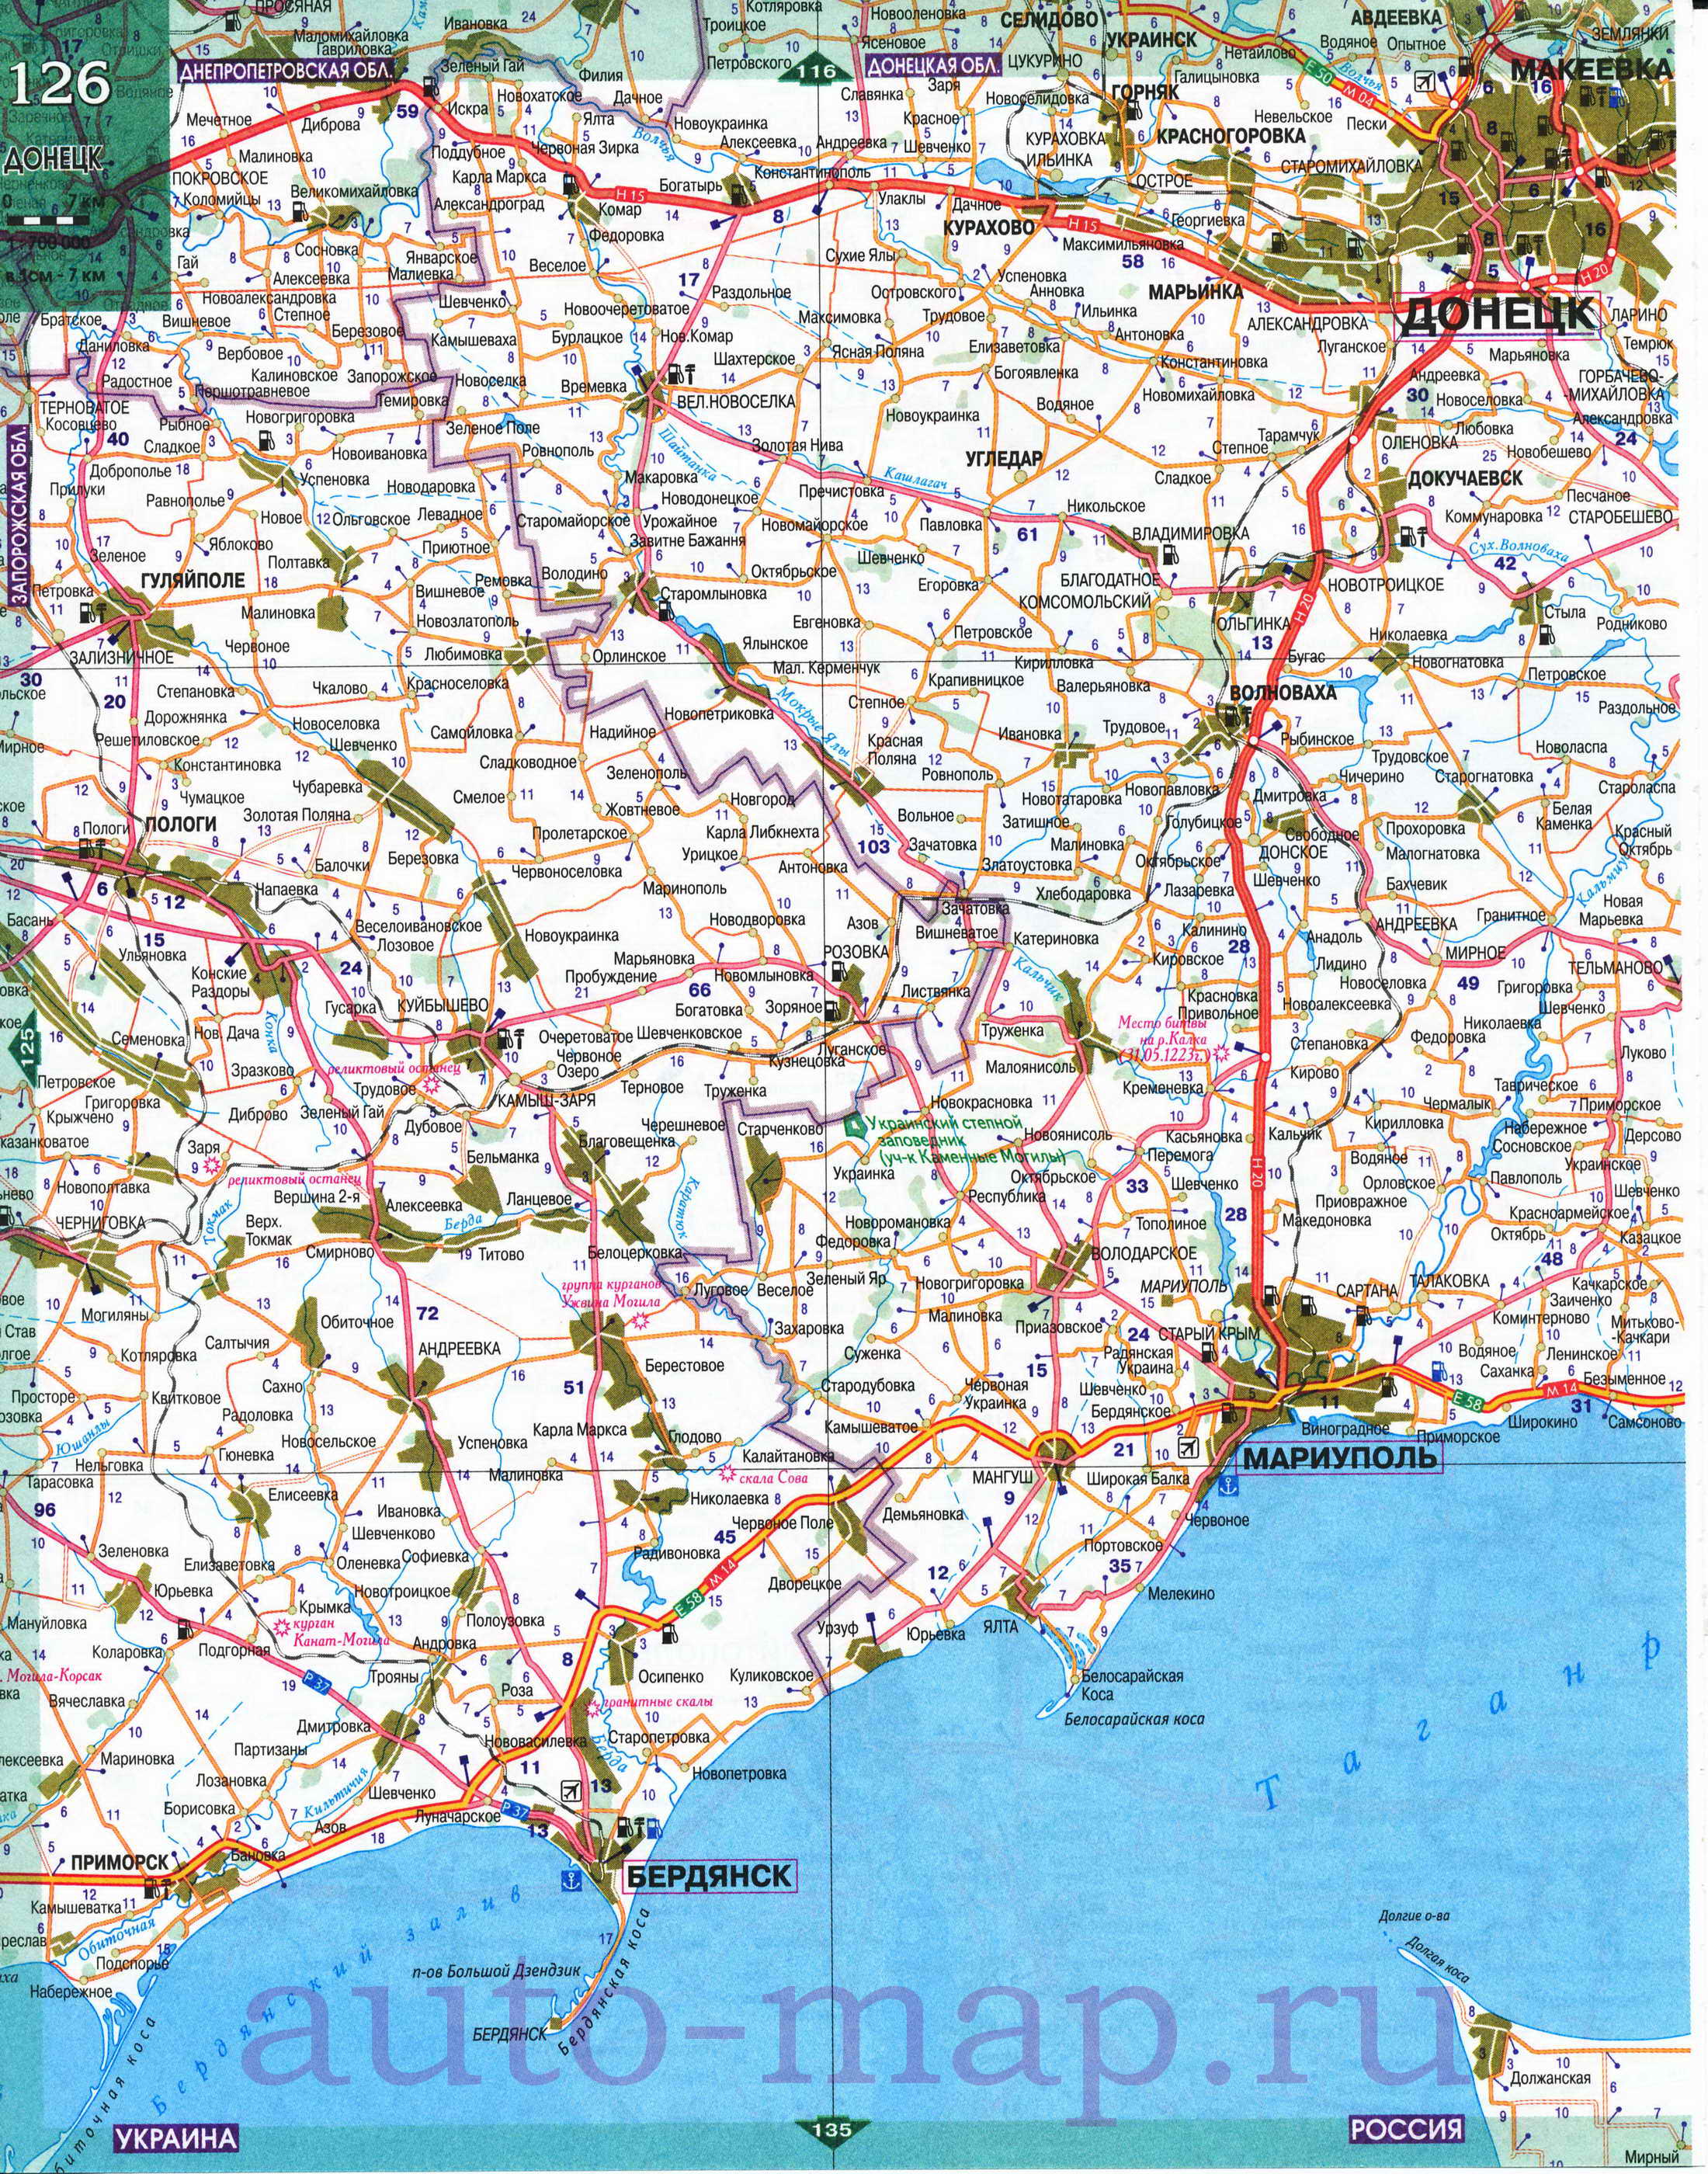 Карта Восточной Украины. Подробная карта областей Восточной Украины, B1 -